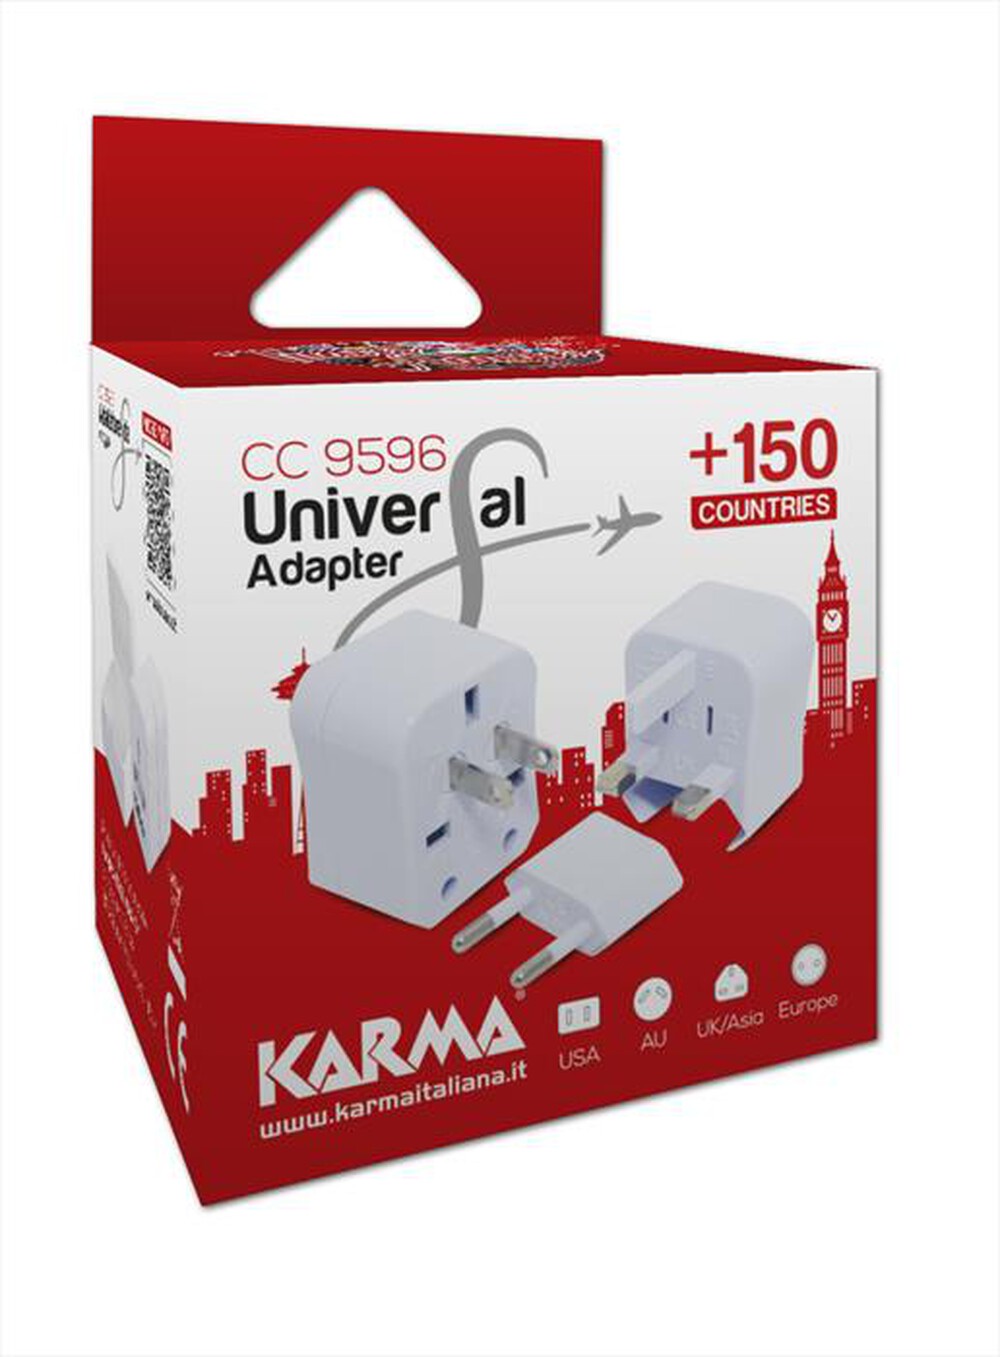 "KARMA - CC 9596-Bianco"